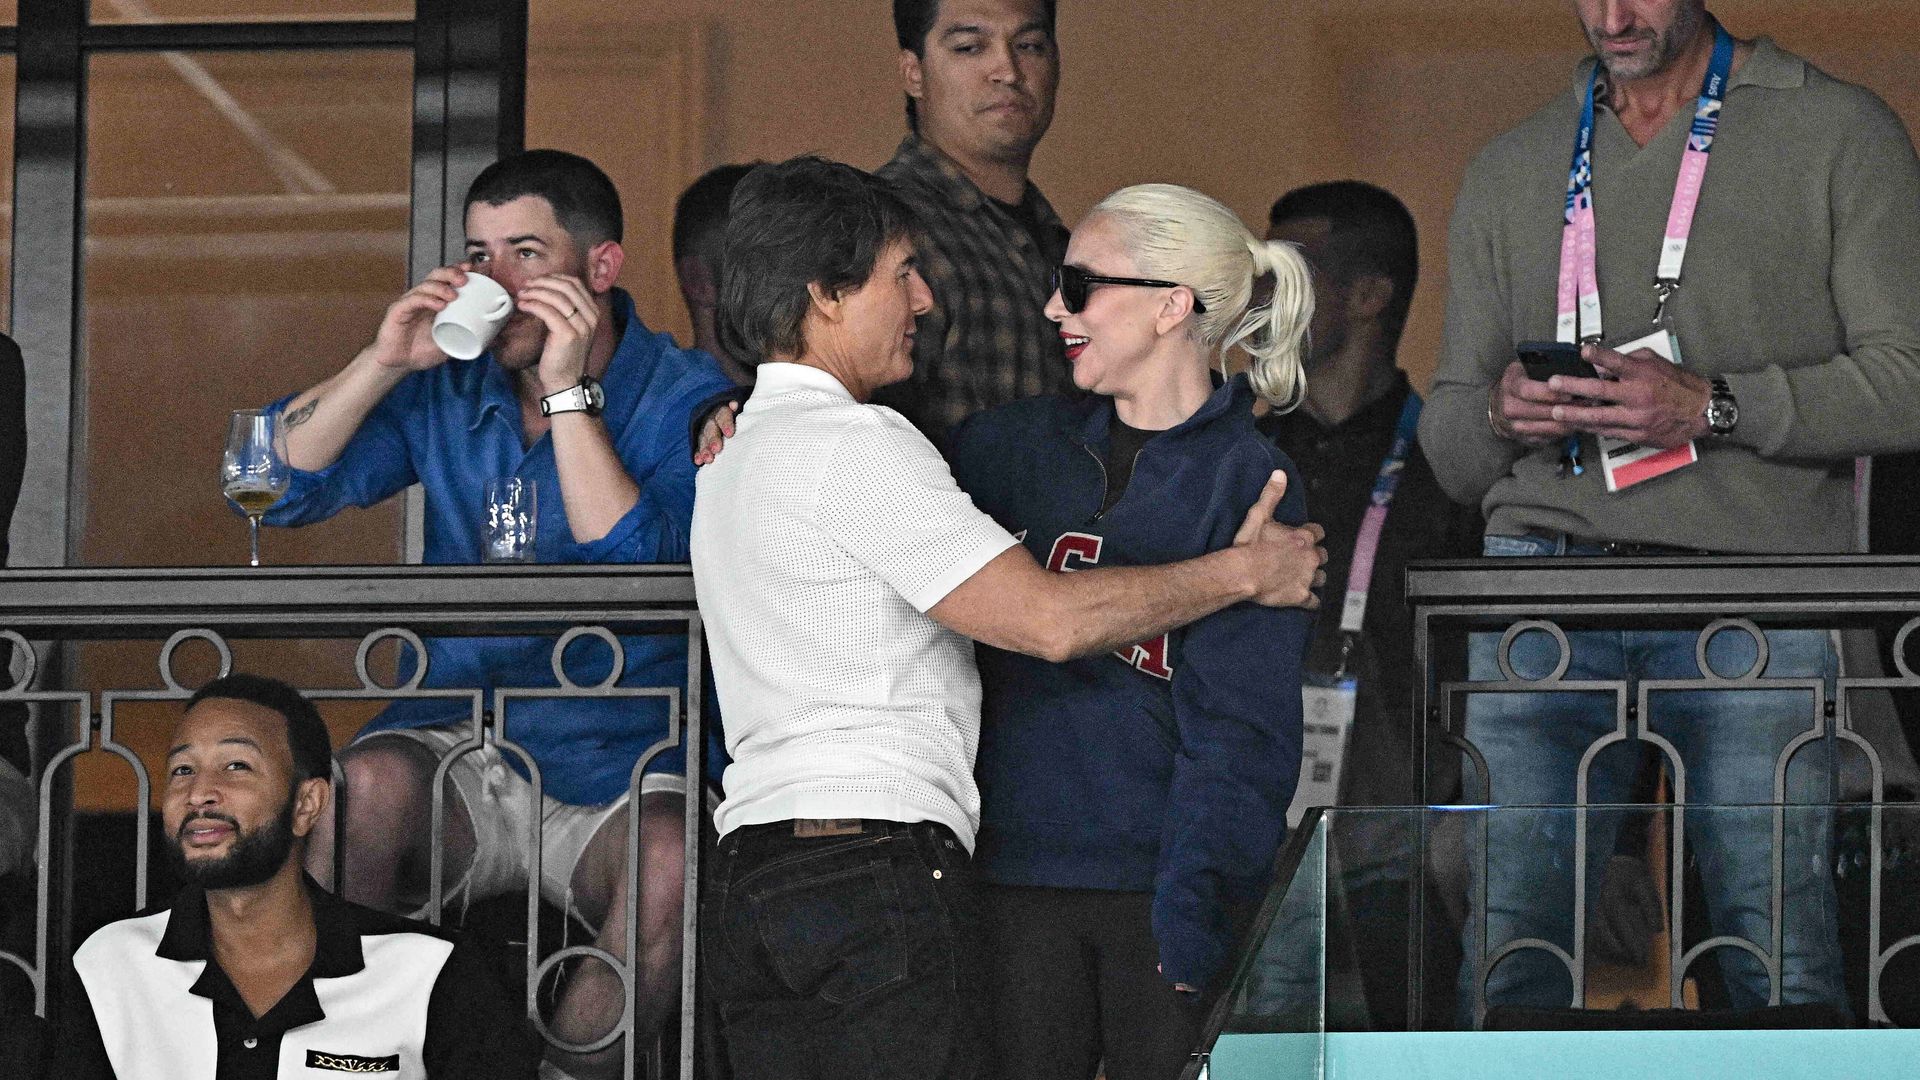 De Tom Cruise a Lady Gaga: lluvia de estrellas en el regreso de Simone Biles a los Juegos Olímpicos, ¡que ha vuelto a asombrar!